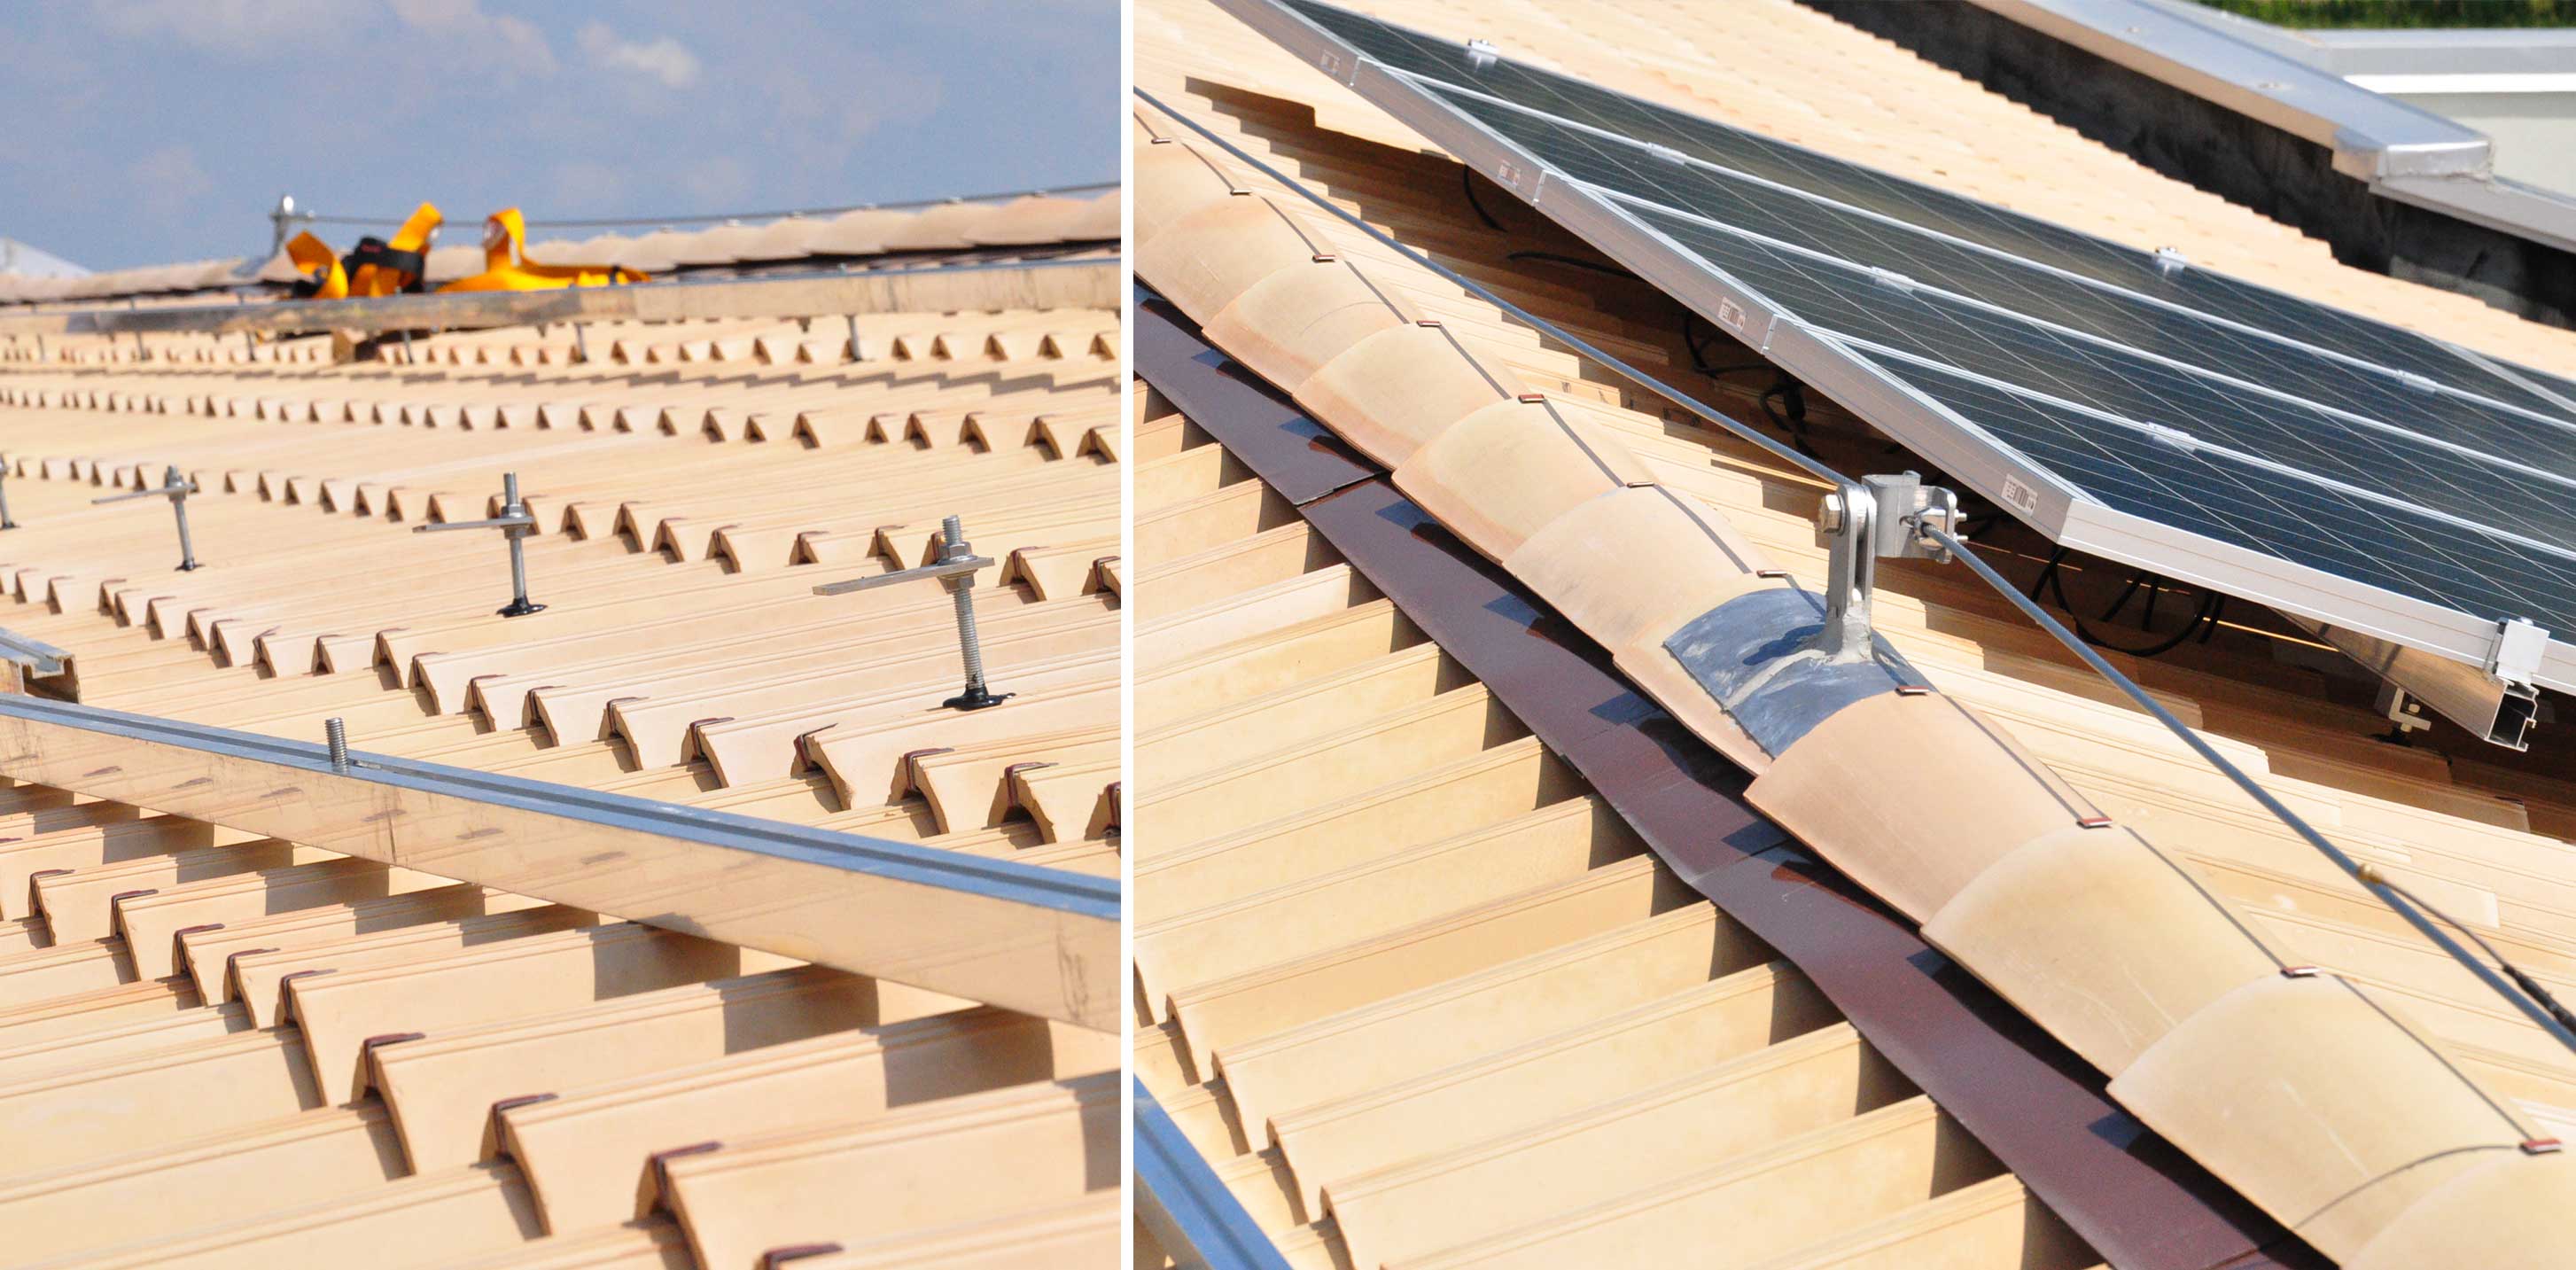 Pannelli fotovoltaici sul tetto